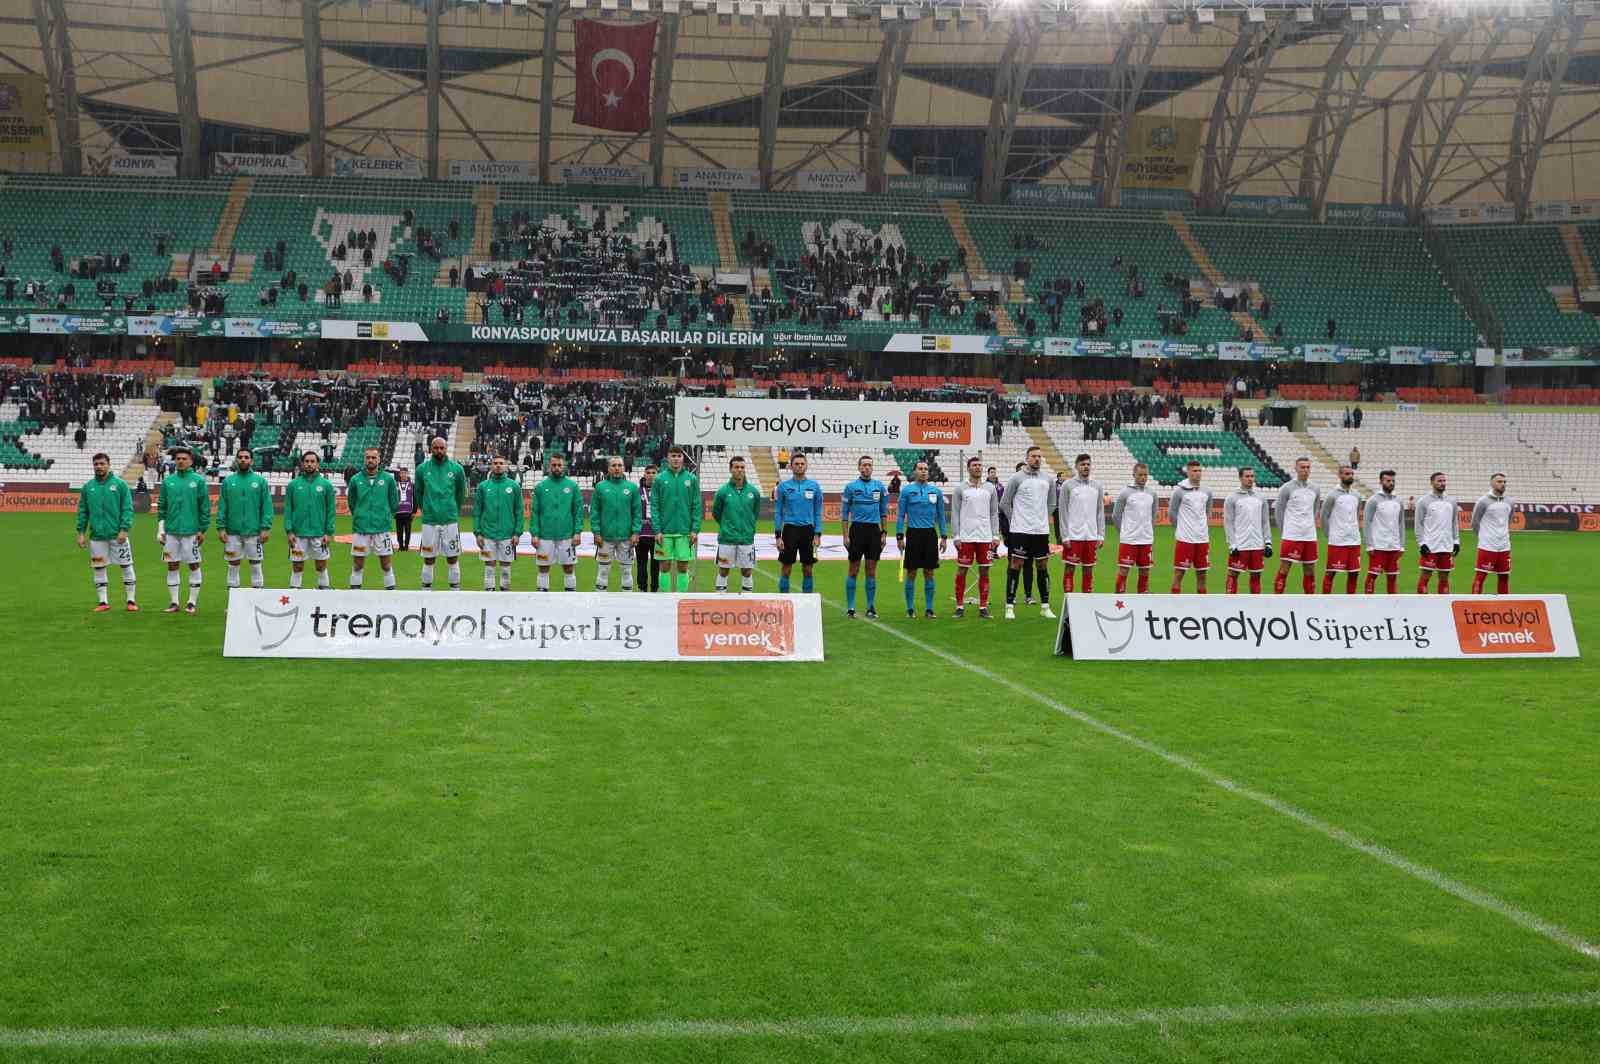 Trendyol Süper Lig: Konyaspor: 1 - Antalyaspor: 0 (İlk yarı)
